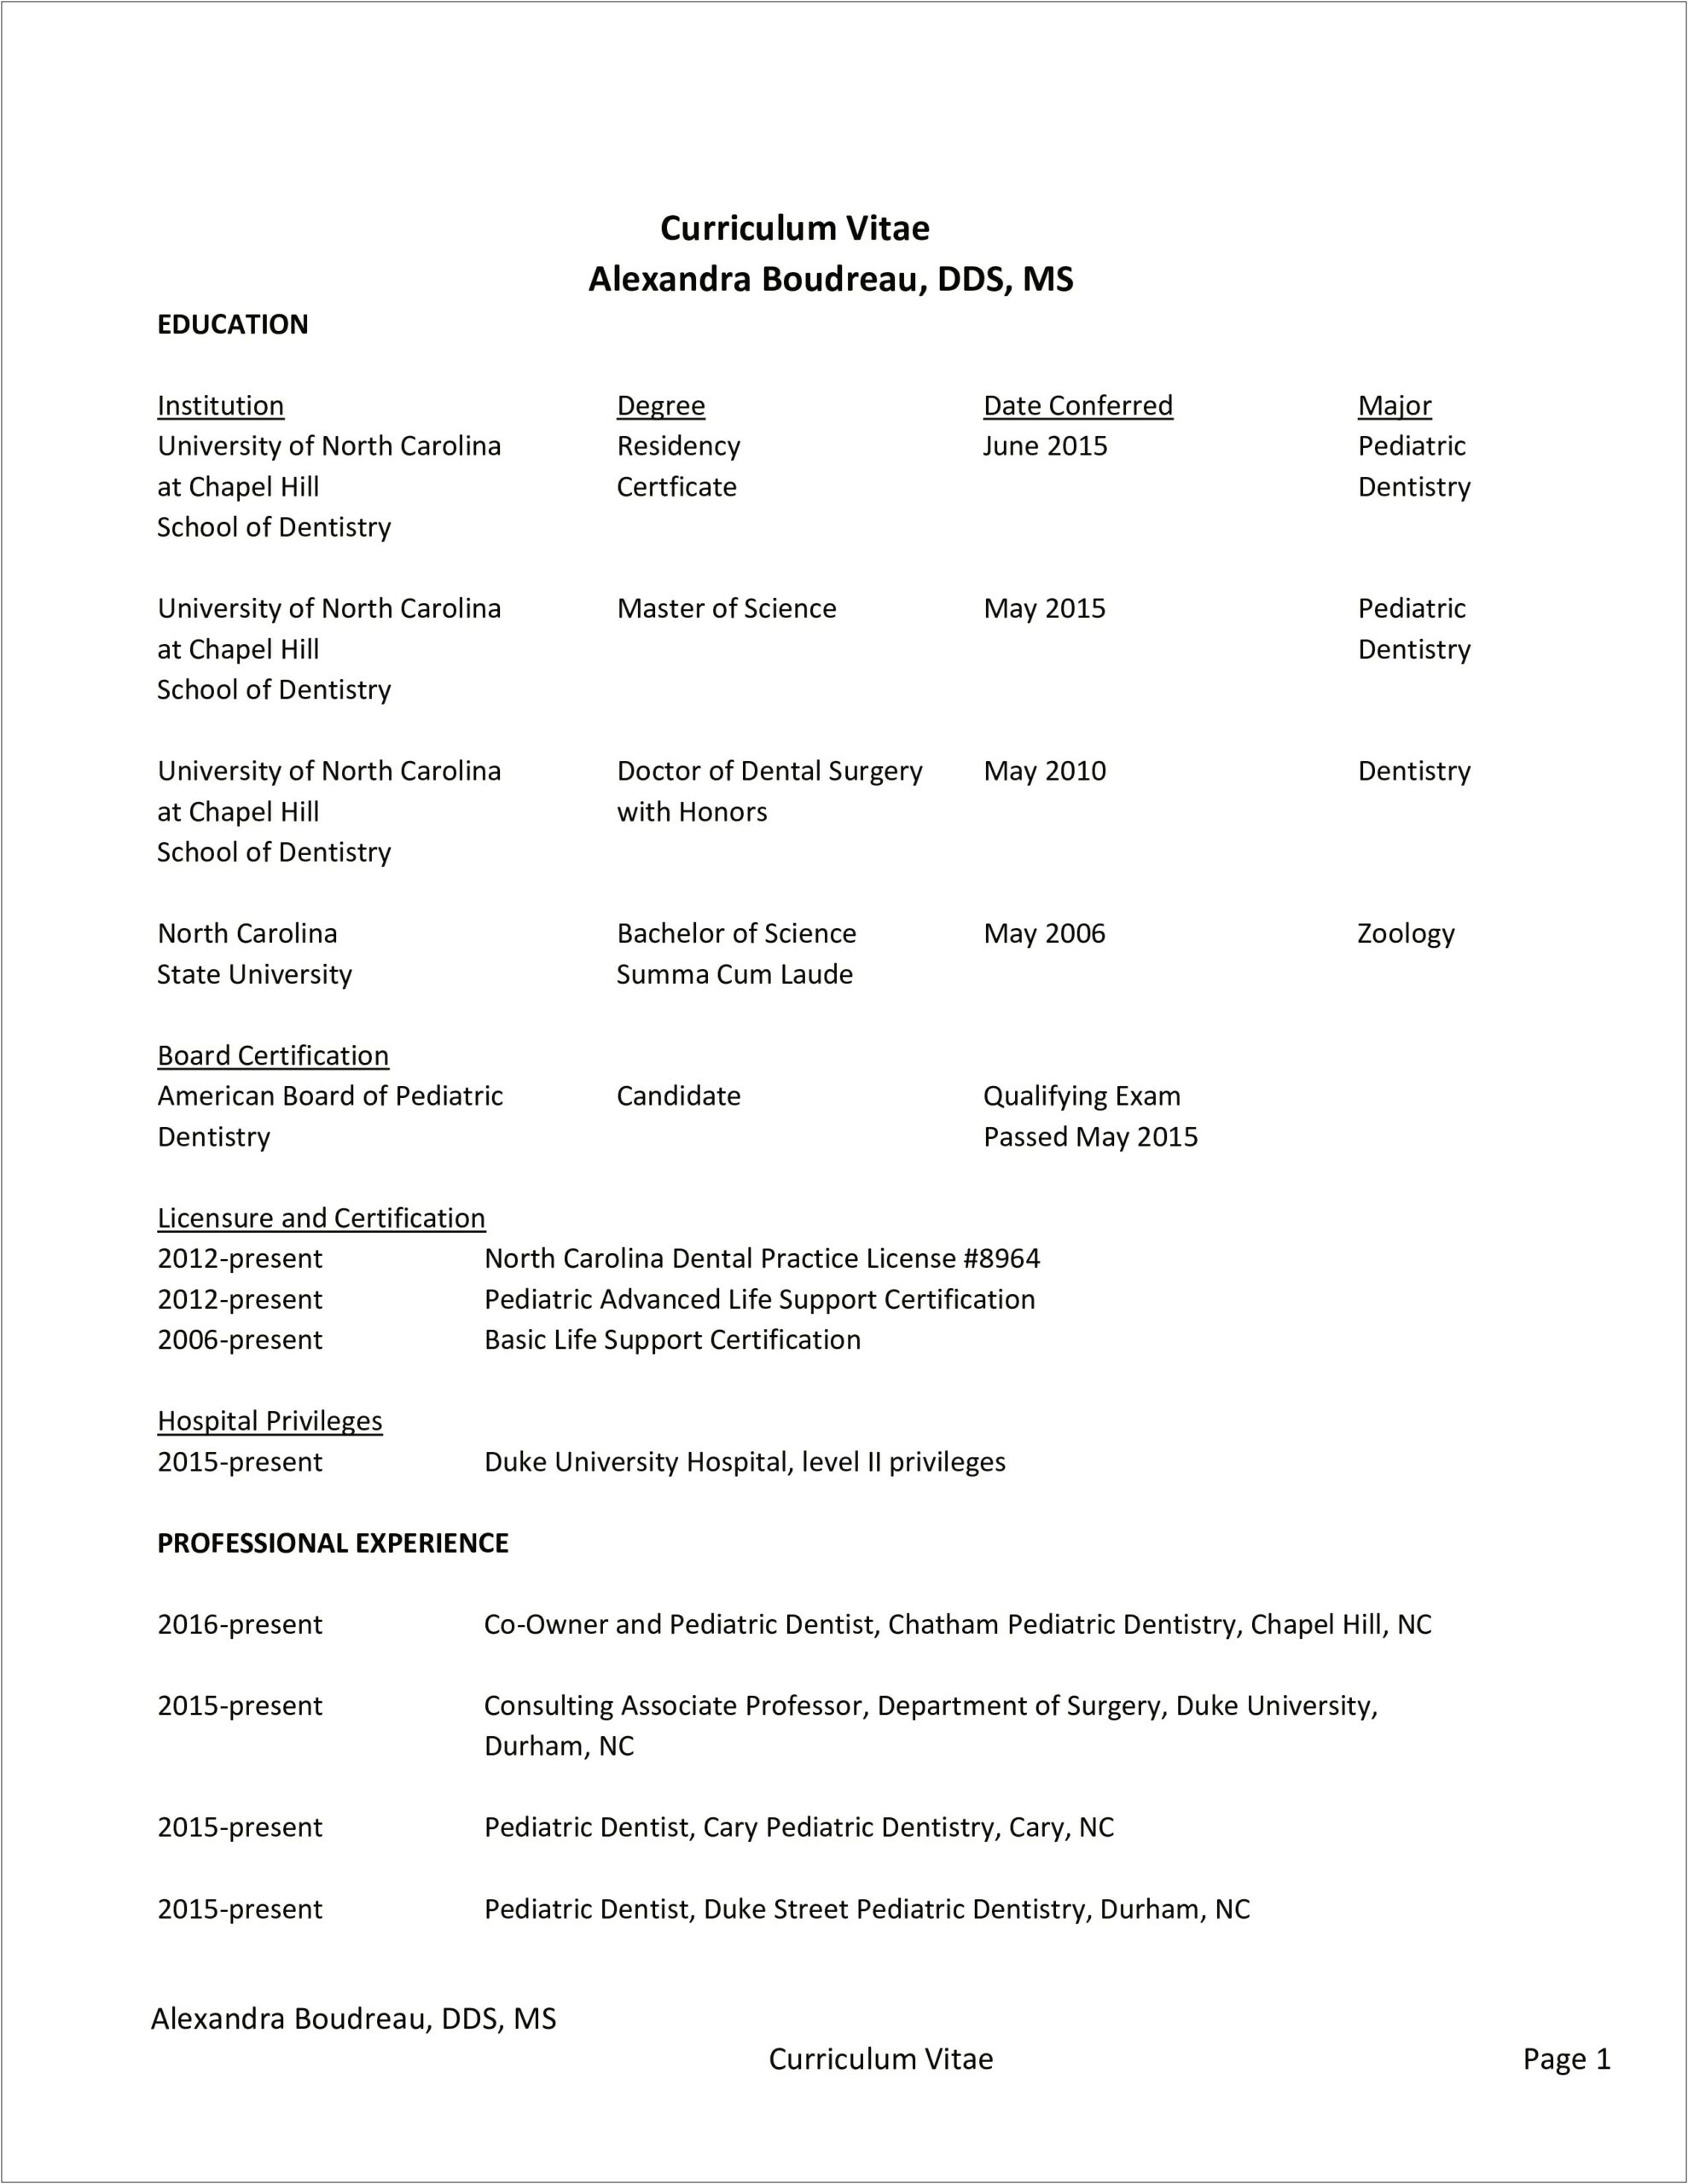 Resume Format For Dentist Job